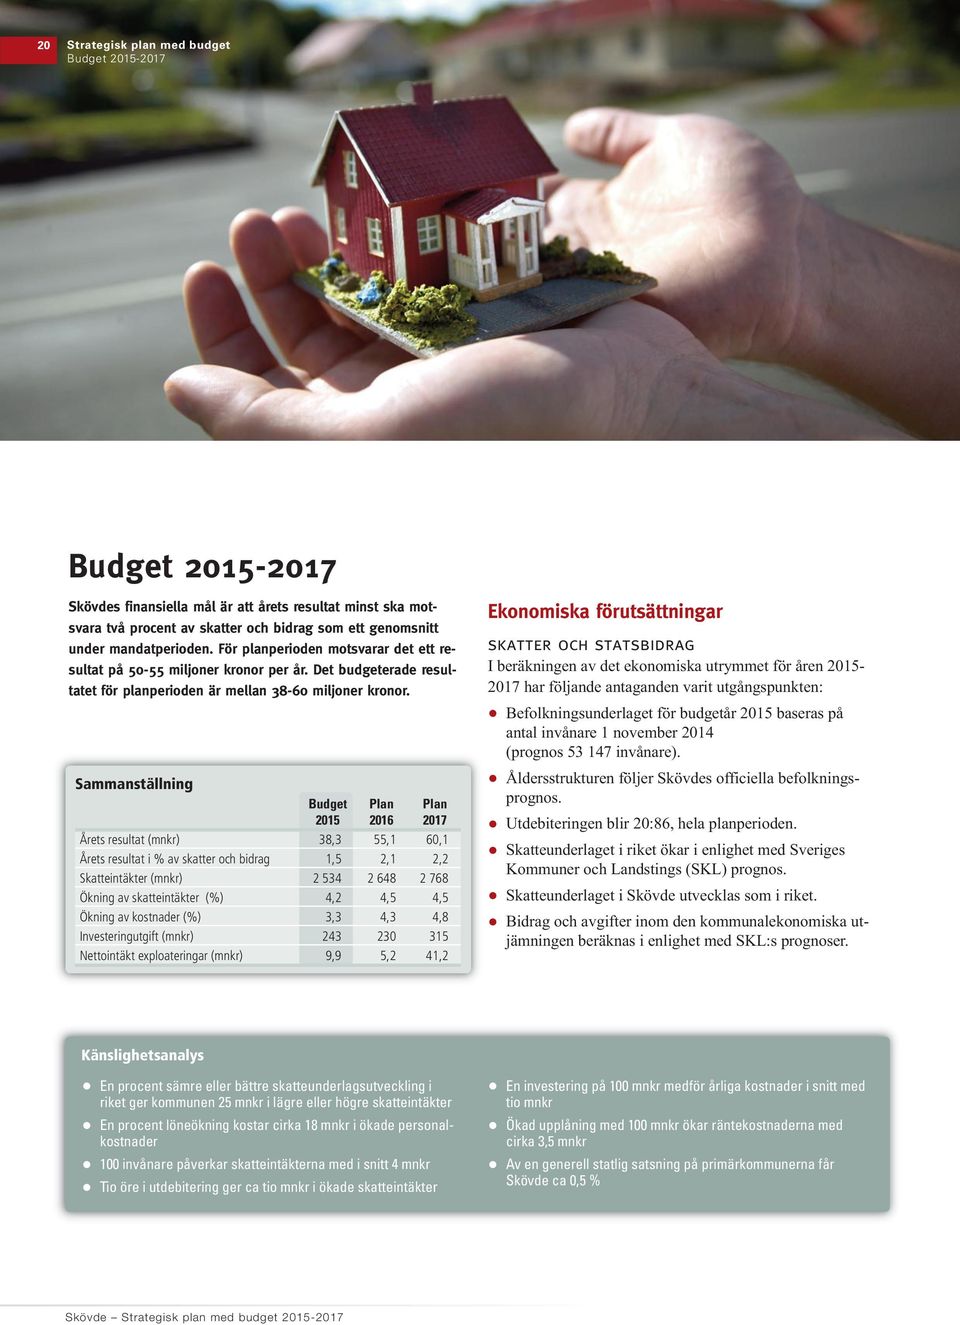 Sammanställning Budget Plan Plan 2015 2016 2017 Årets resultat (mnkr) 38,3 55,1 60,1 Årets resultat i % av skatter och bidrag 1,5 2,1 2,2 Skatteintäkter (mnkr) 2 534 2 648 2 768 Ökning av